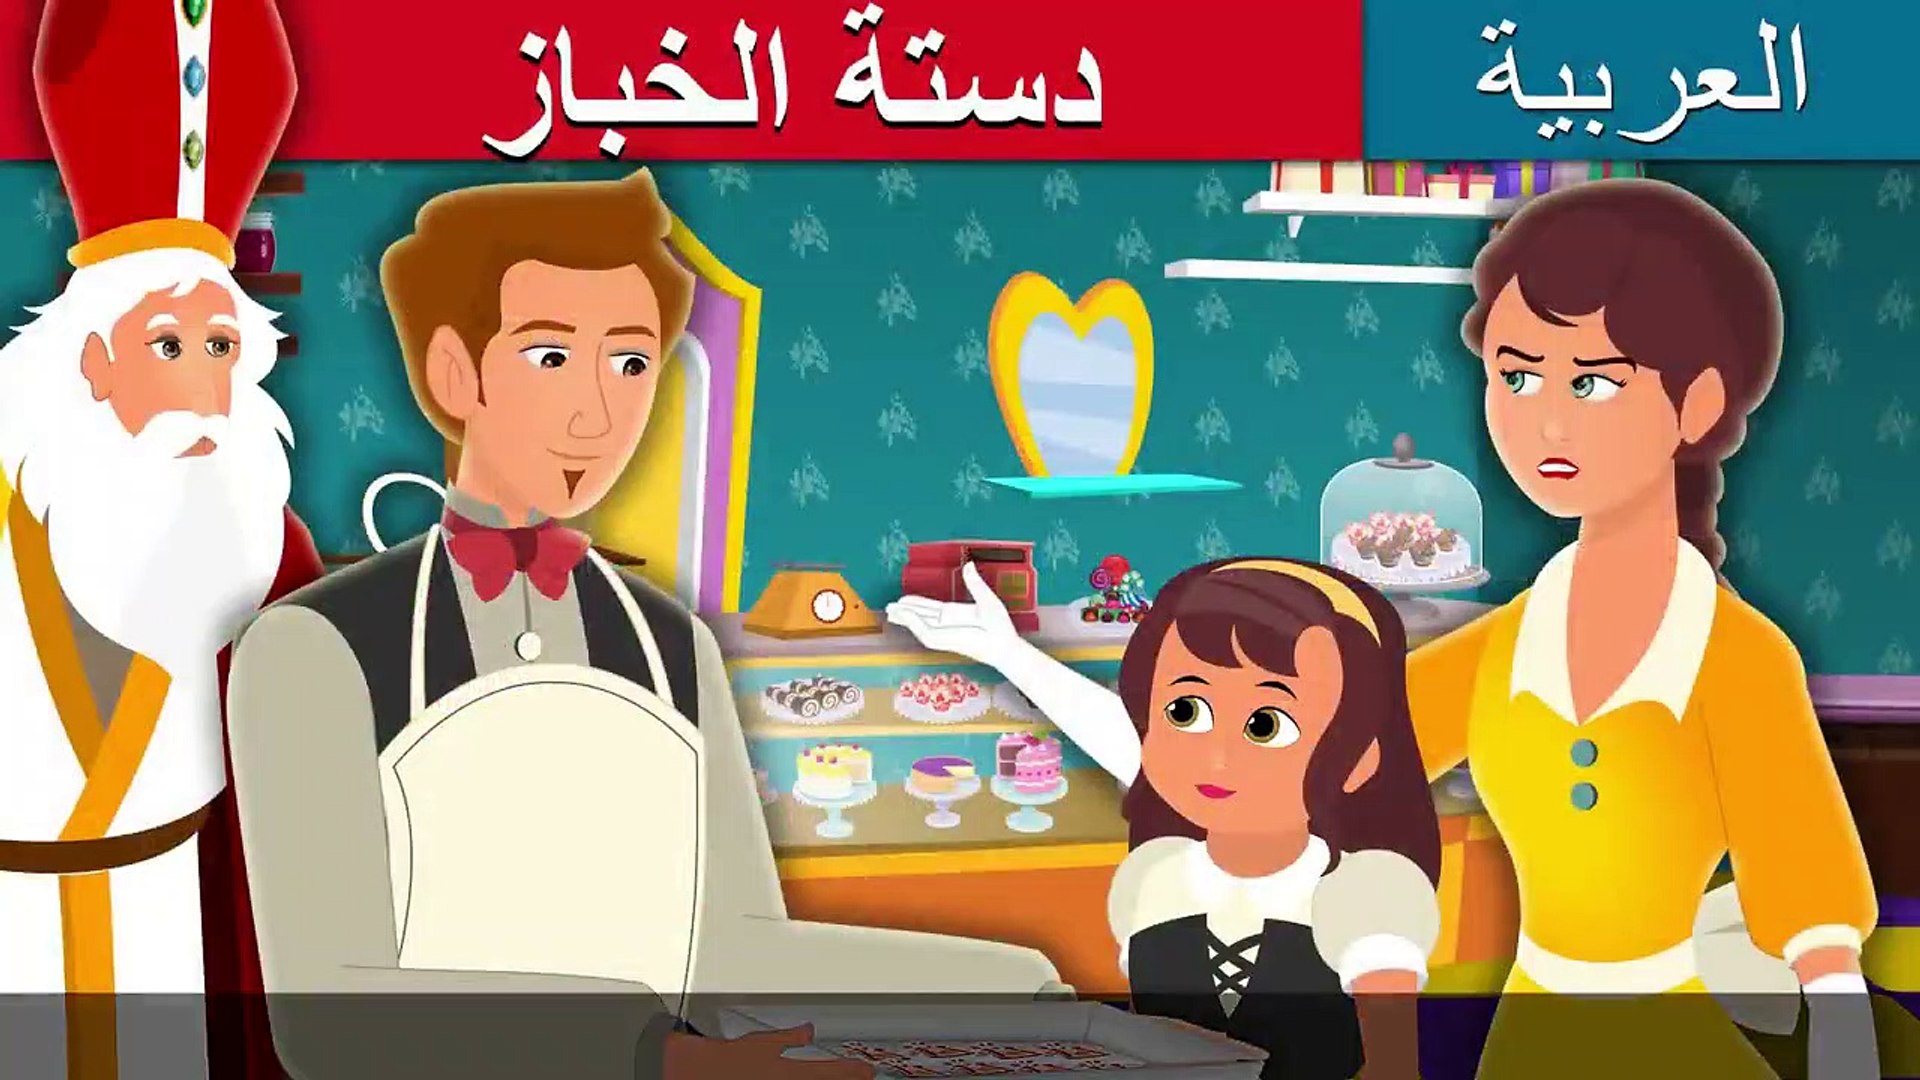 دستة الخباز - Baker's Dozen Story in Arabic - Arabian Fairy Tales - فيديو  Dailymotion